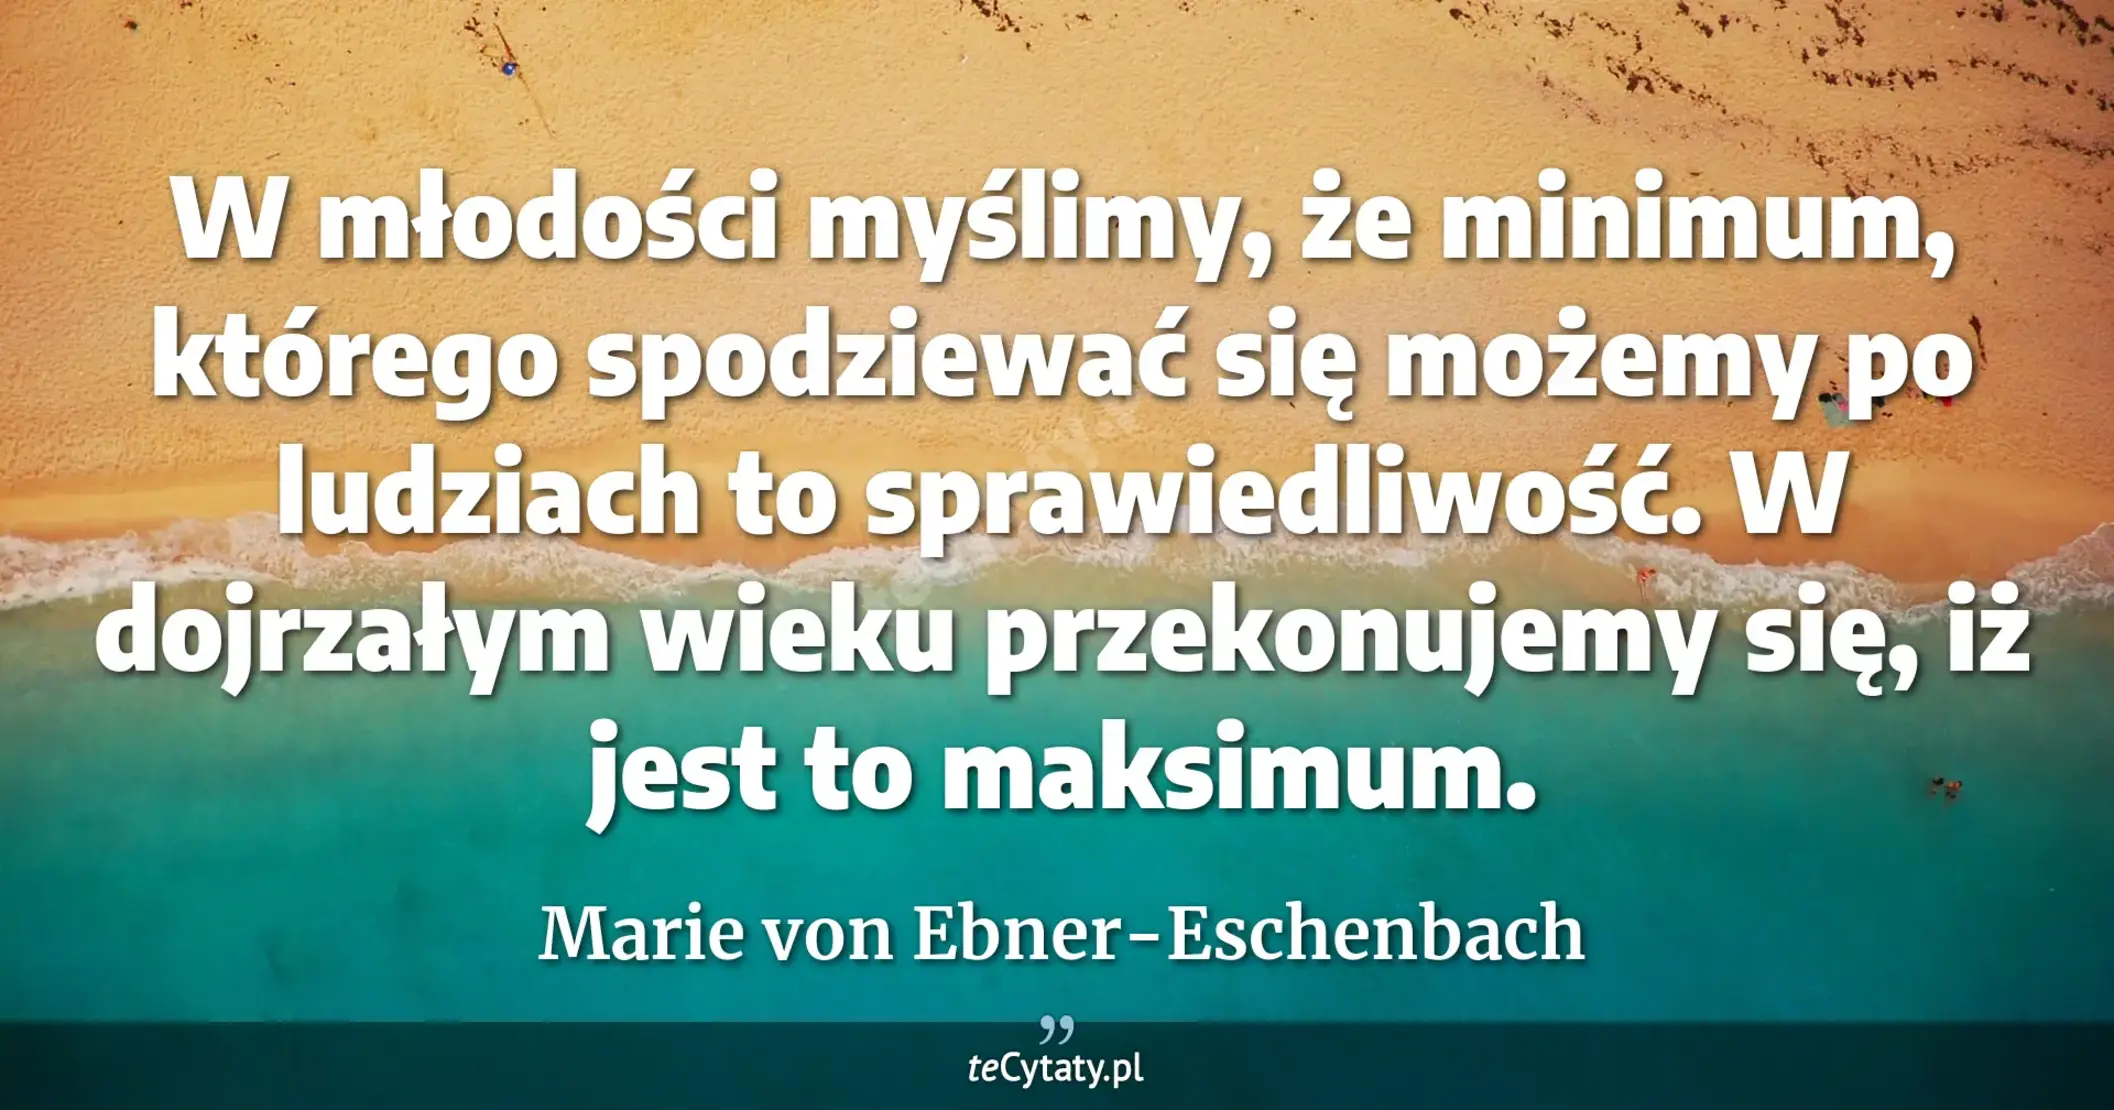 W młodości myślimy, że minimum, którego spodziewać się możemy po ludziach to sprawiedliwość. W dojrzałym wieku przekonujemy się, iż jest to maksimum. - Marie von Ebner-Eschenbach